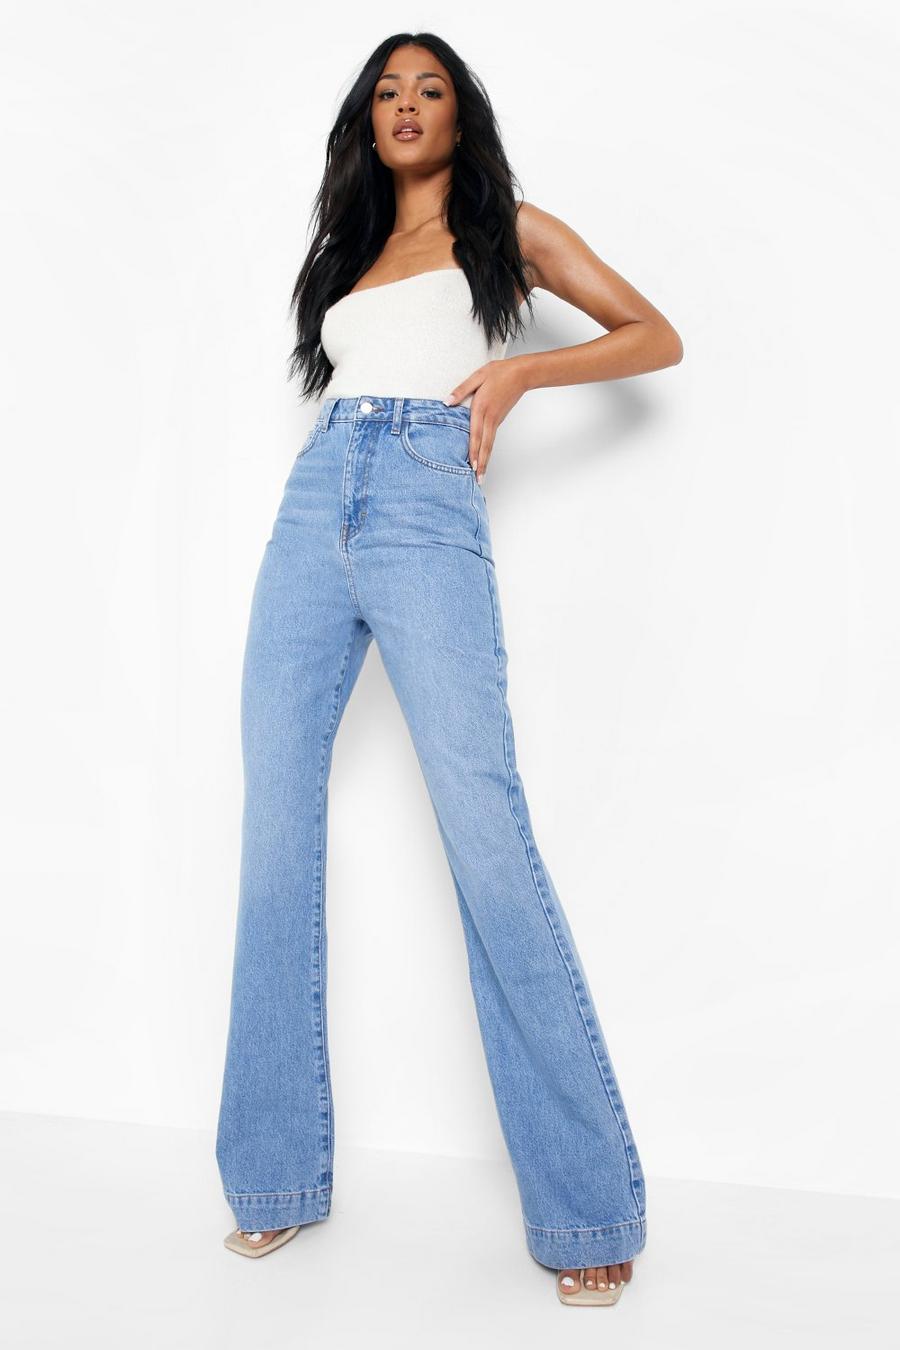 Women's Tall Jeans, Long Jeans for Women